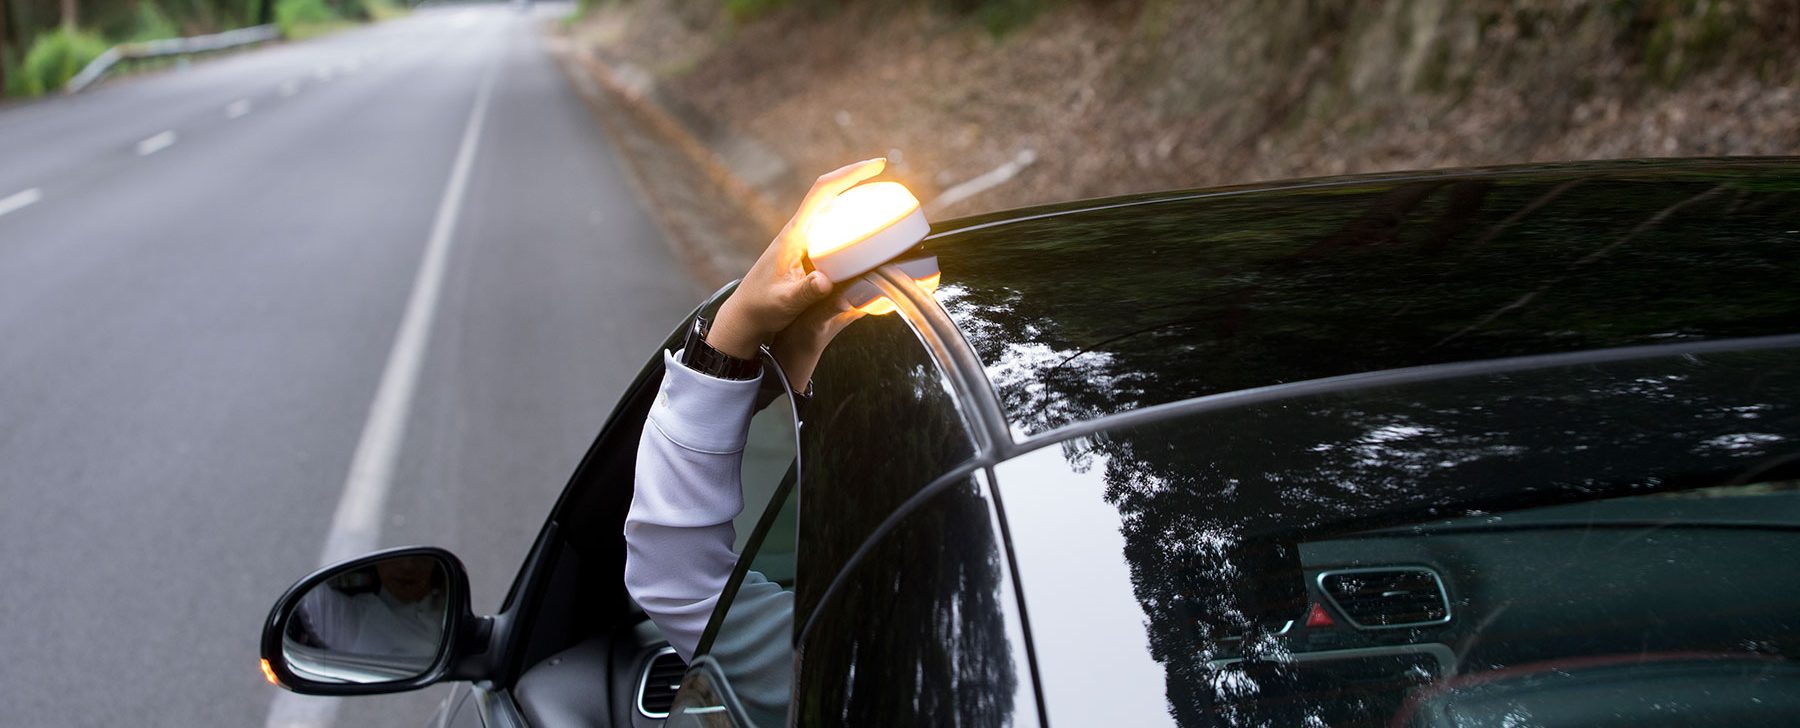 Cuándo entran en vigor las nuevas luces V16 obligatorias para vehículos